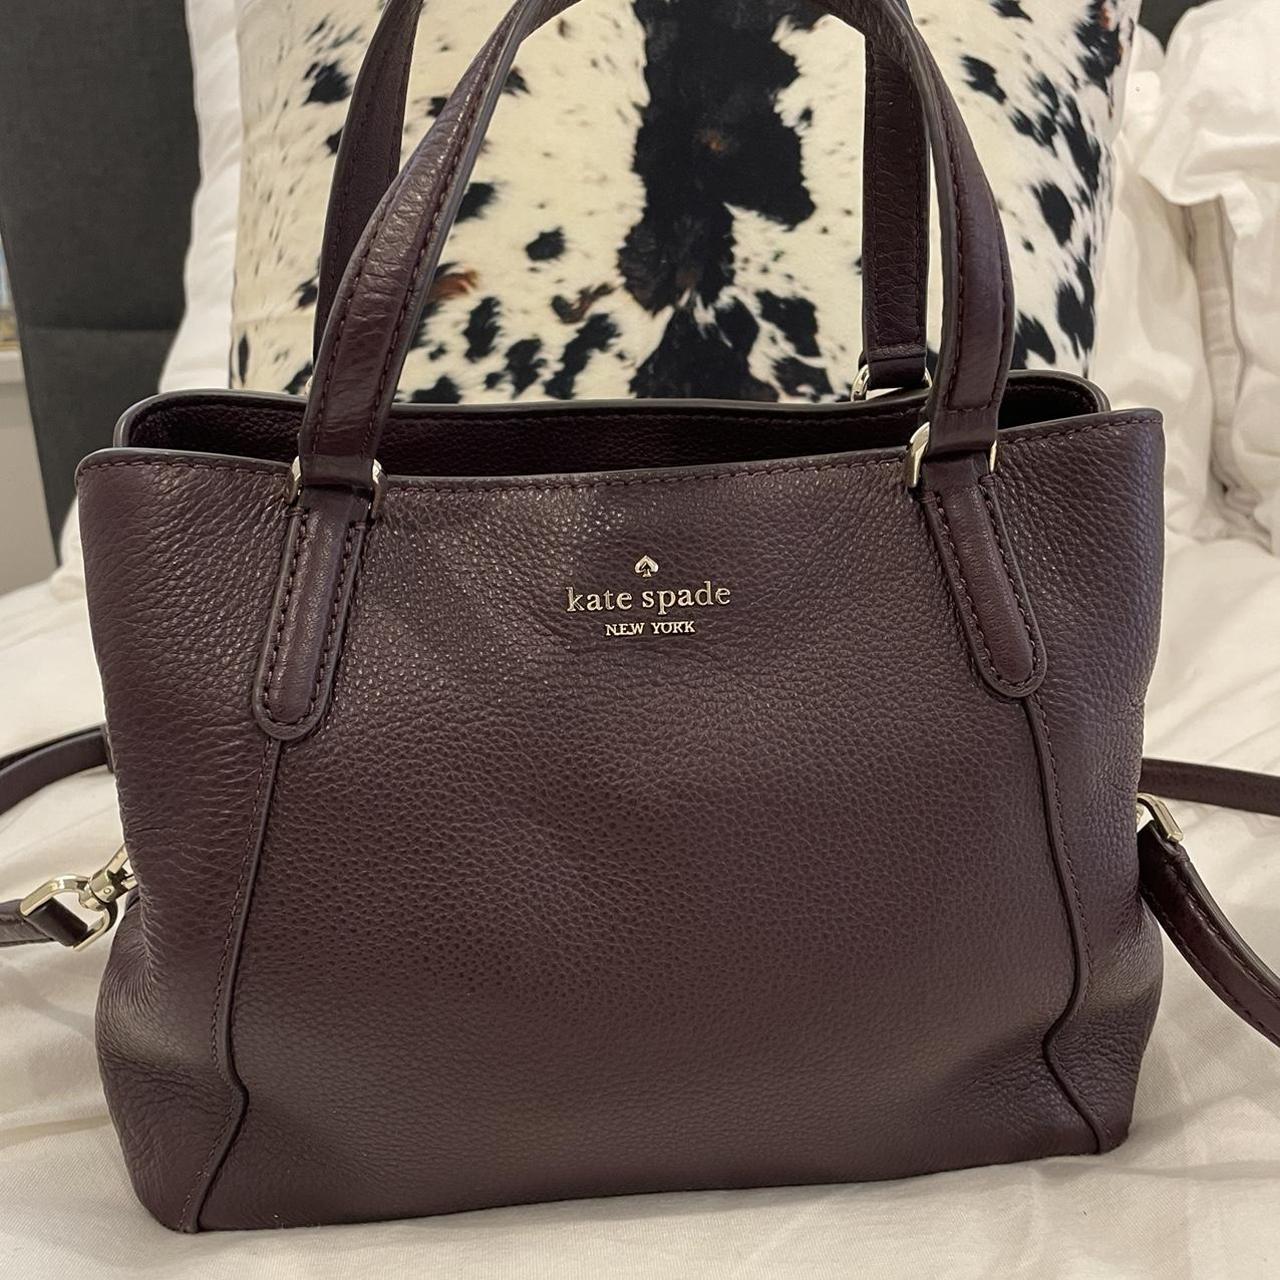 Kate Spade New York Women's Burgundy Bag | Depop